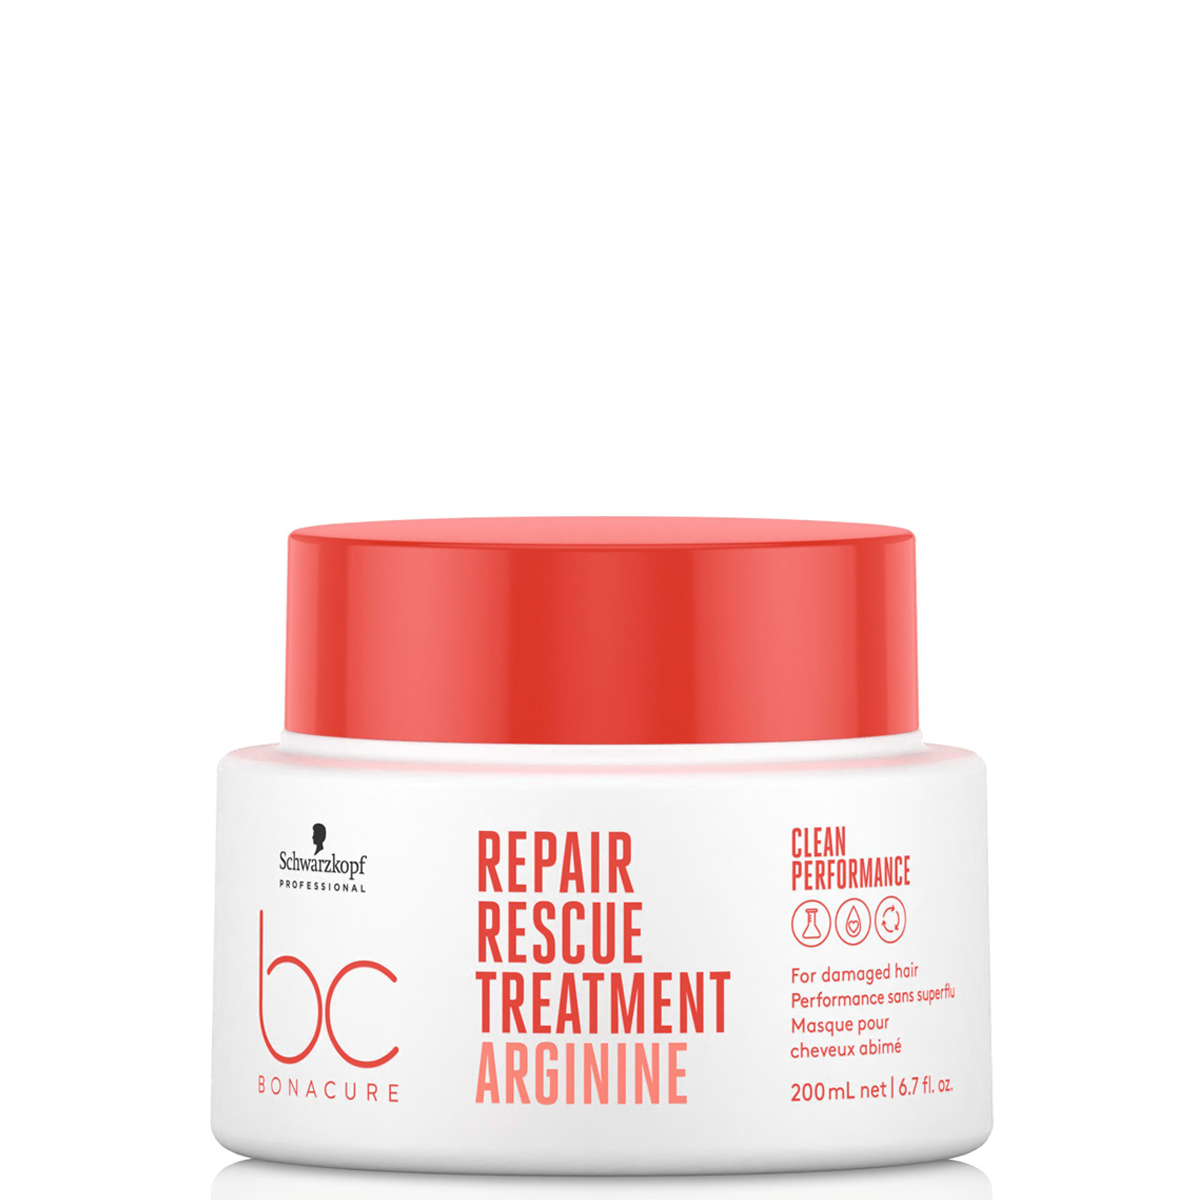 BC Bonacure Repair Rescue Treatment Arginine, 200 ml - Hairsale.se